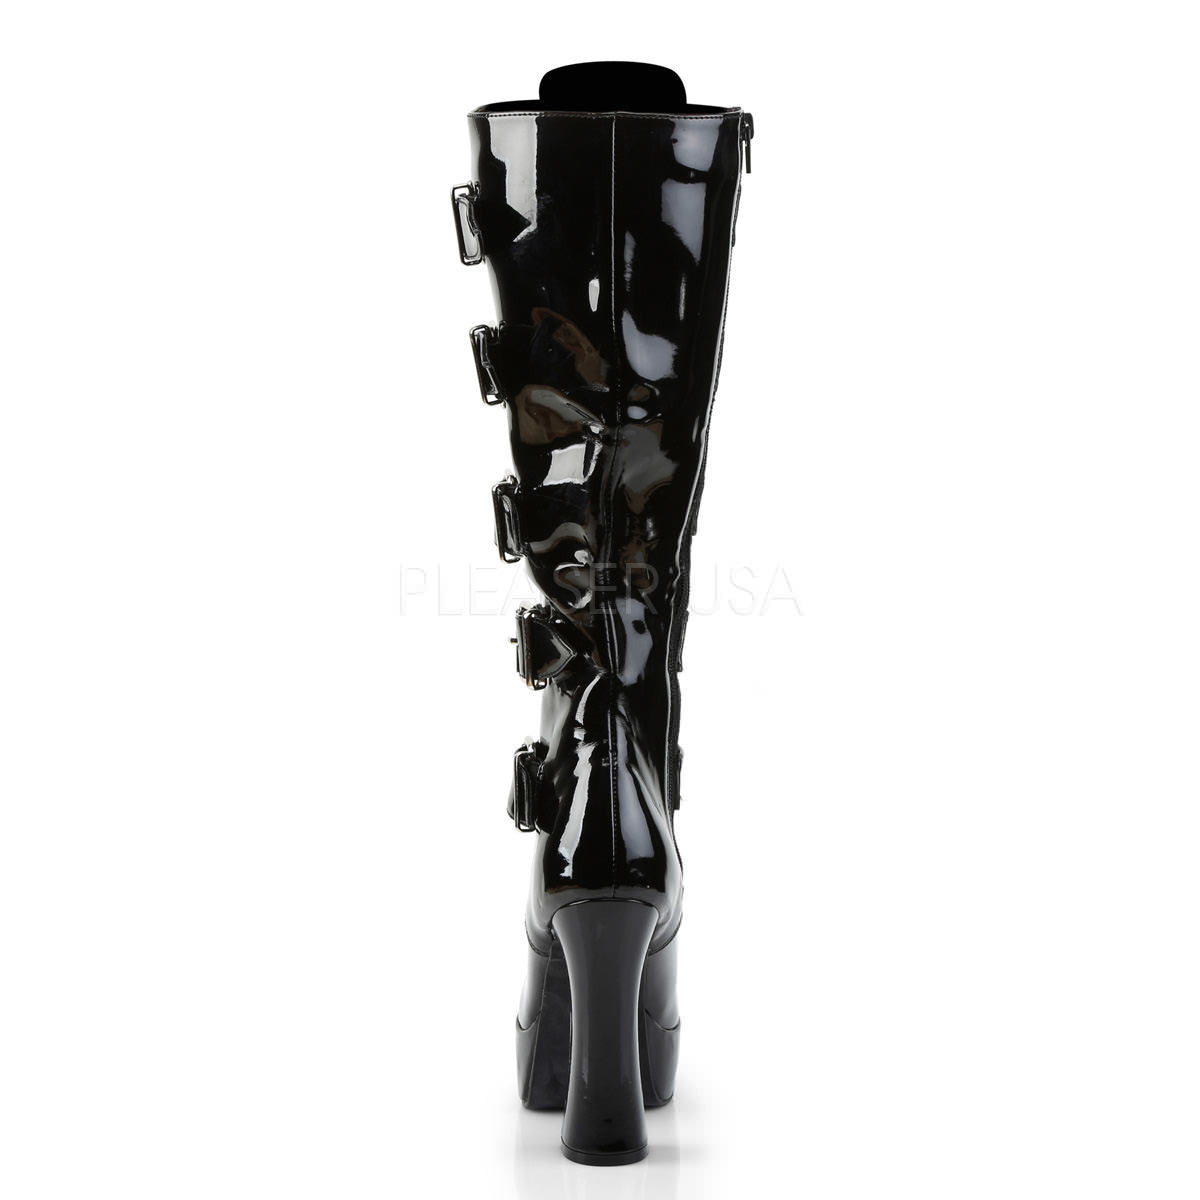 5 Inch Heel Pleaser ELECTRA-2042 Black Patent Buckle Knee Boots ...